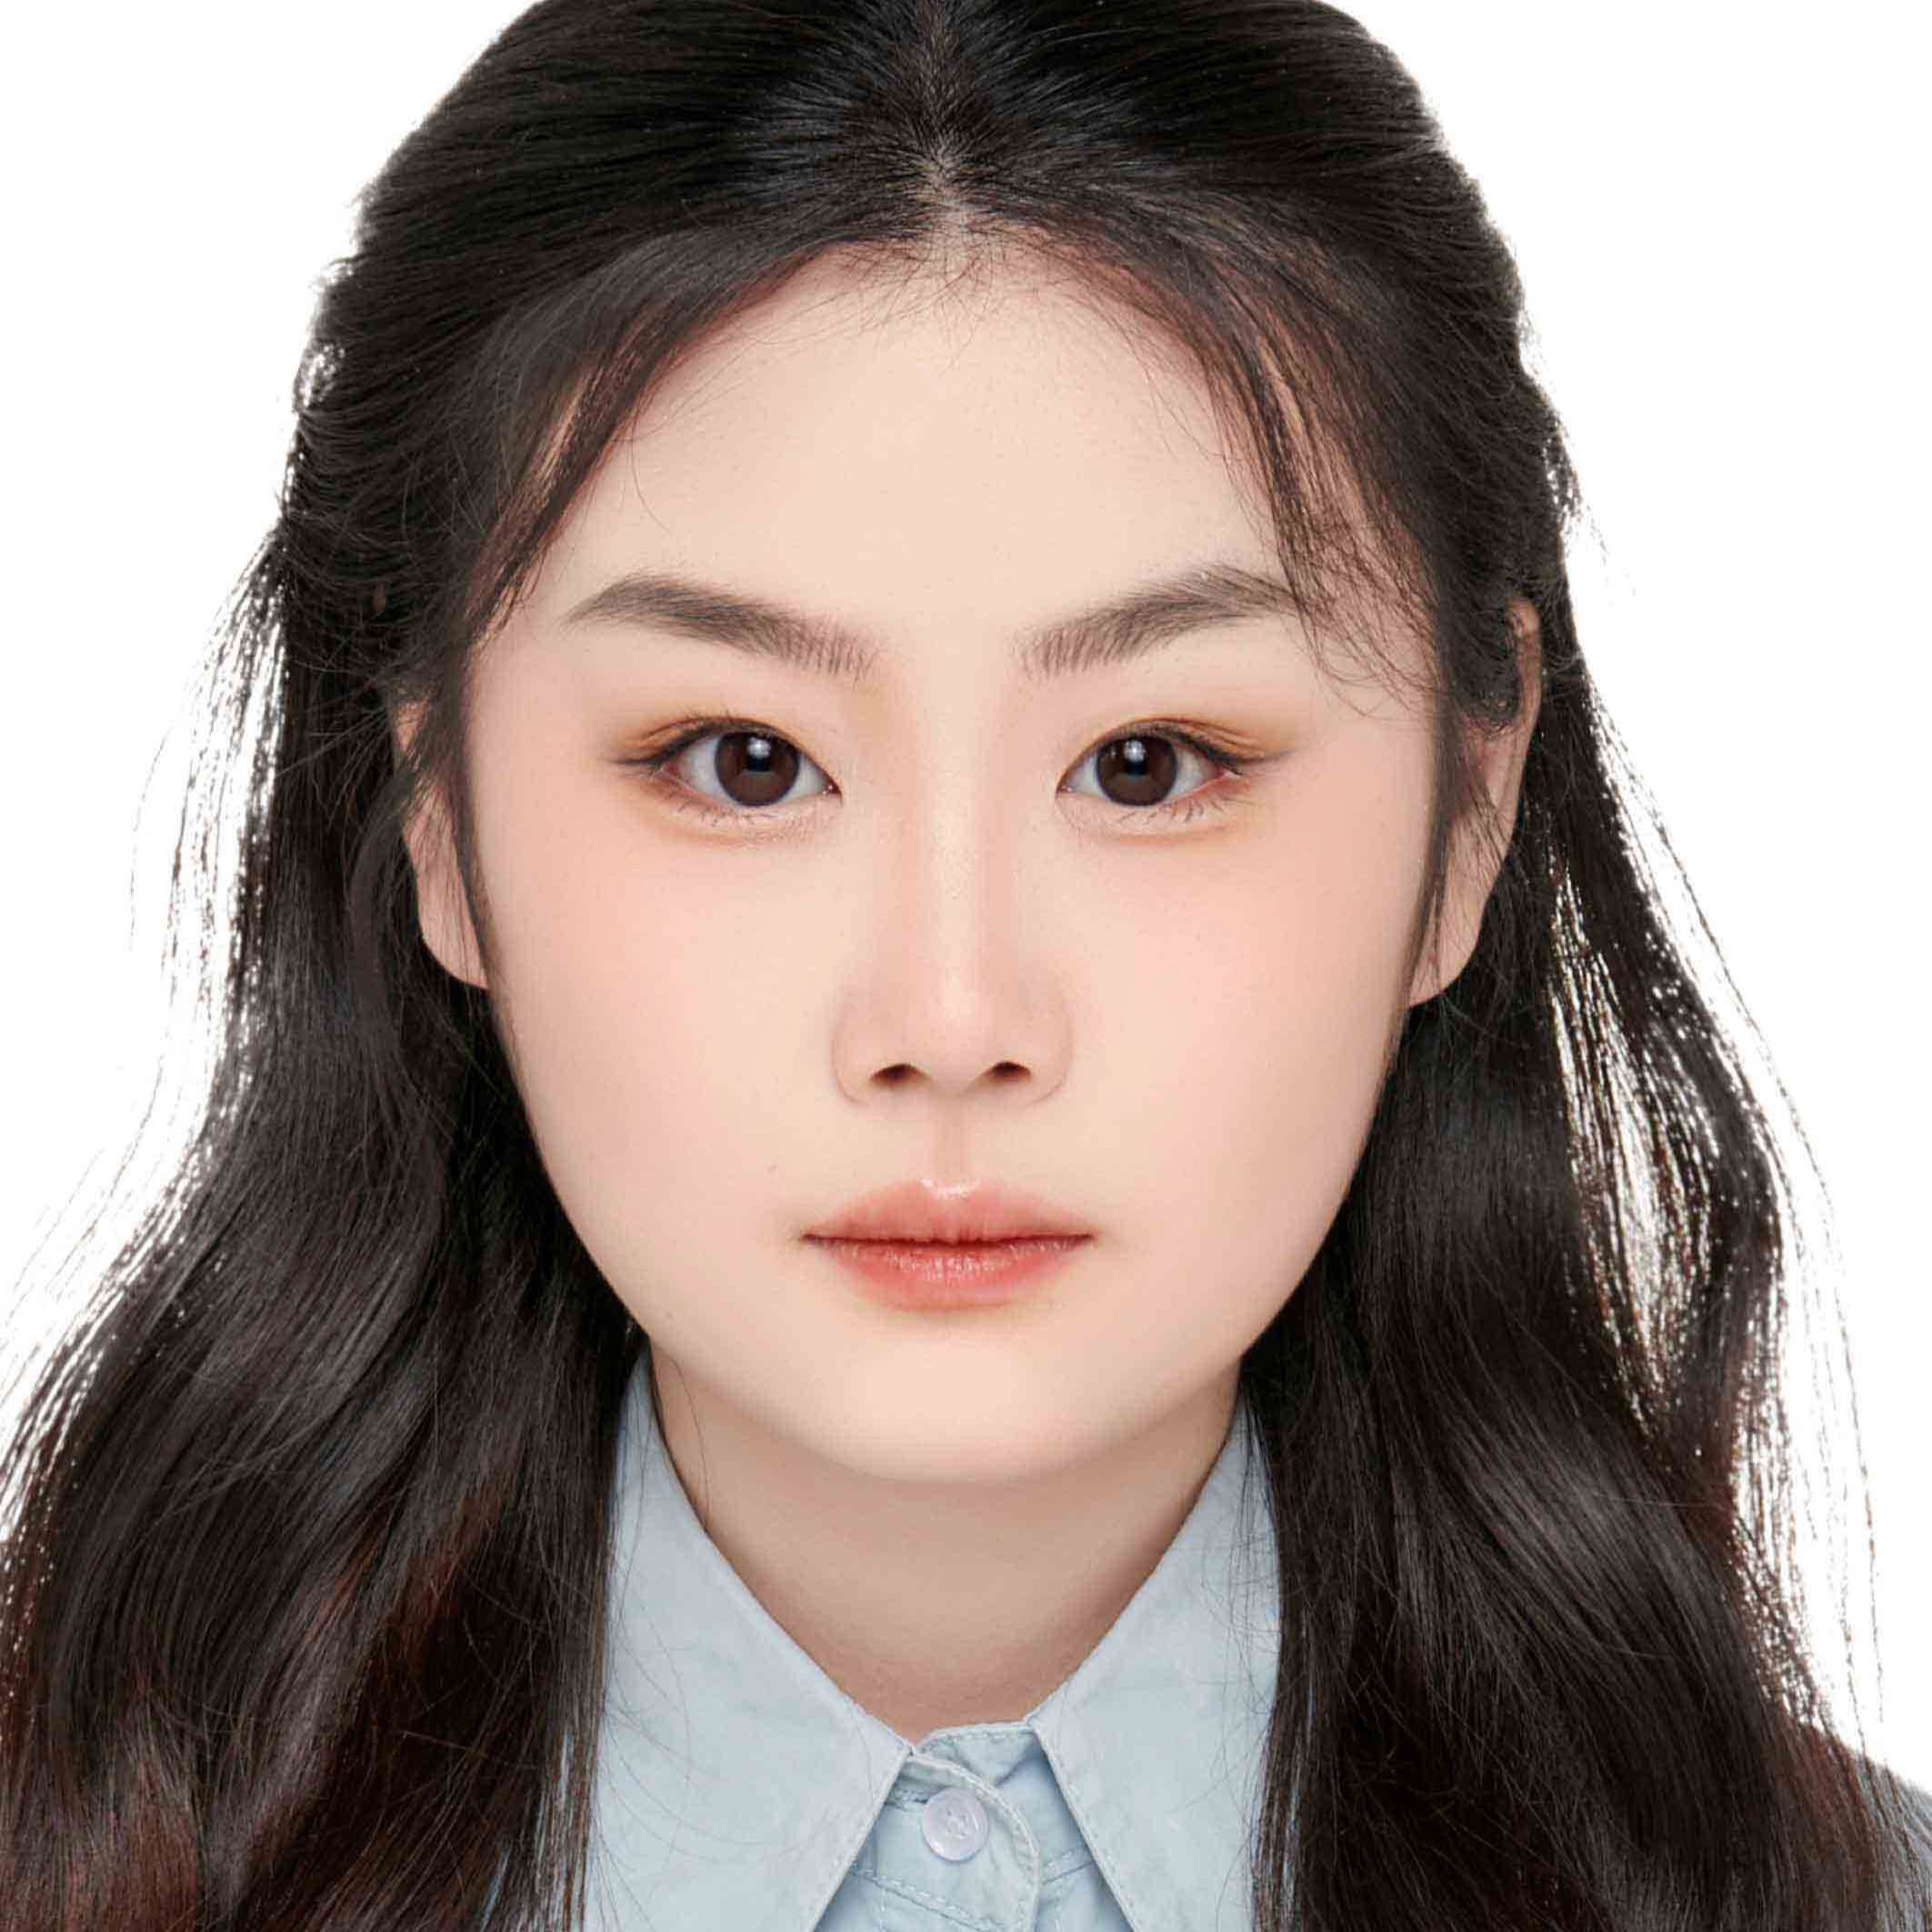 Xiaohan Hong